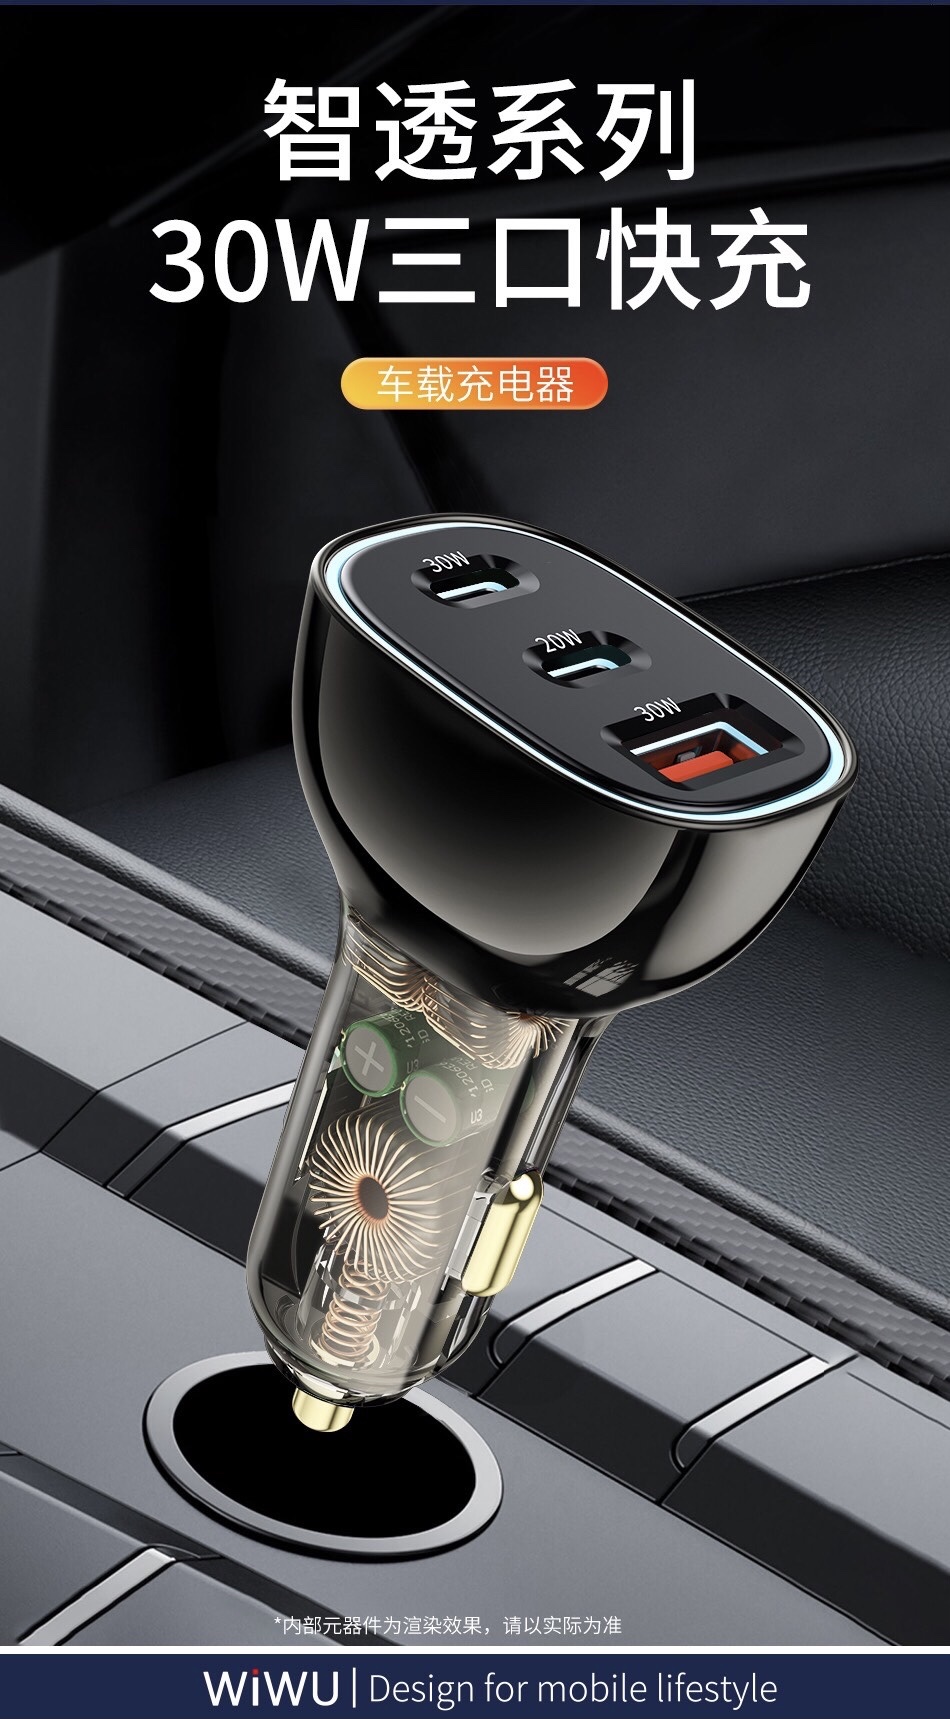 Bộ sạc xe hơi Wiwu 3 In 1 Car Charger Dual USB C + USB A PC700 cho điện thoại sạc nhanh, hỗ trợ sạc 3 cổng một lúc, thiết kế trong suốt - Hàng chính hãng